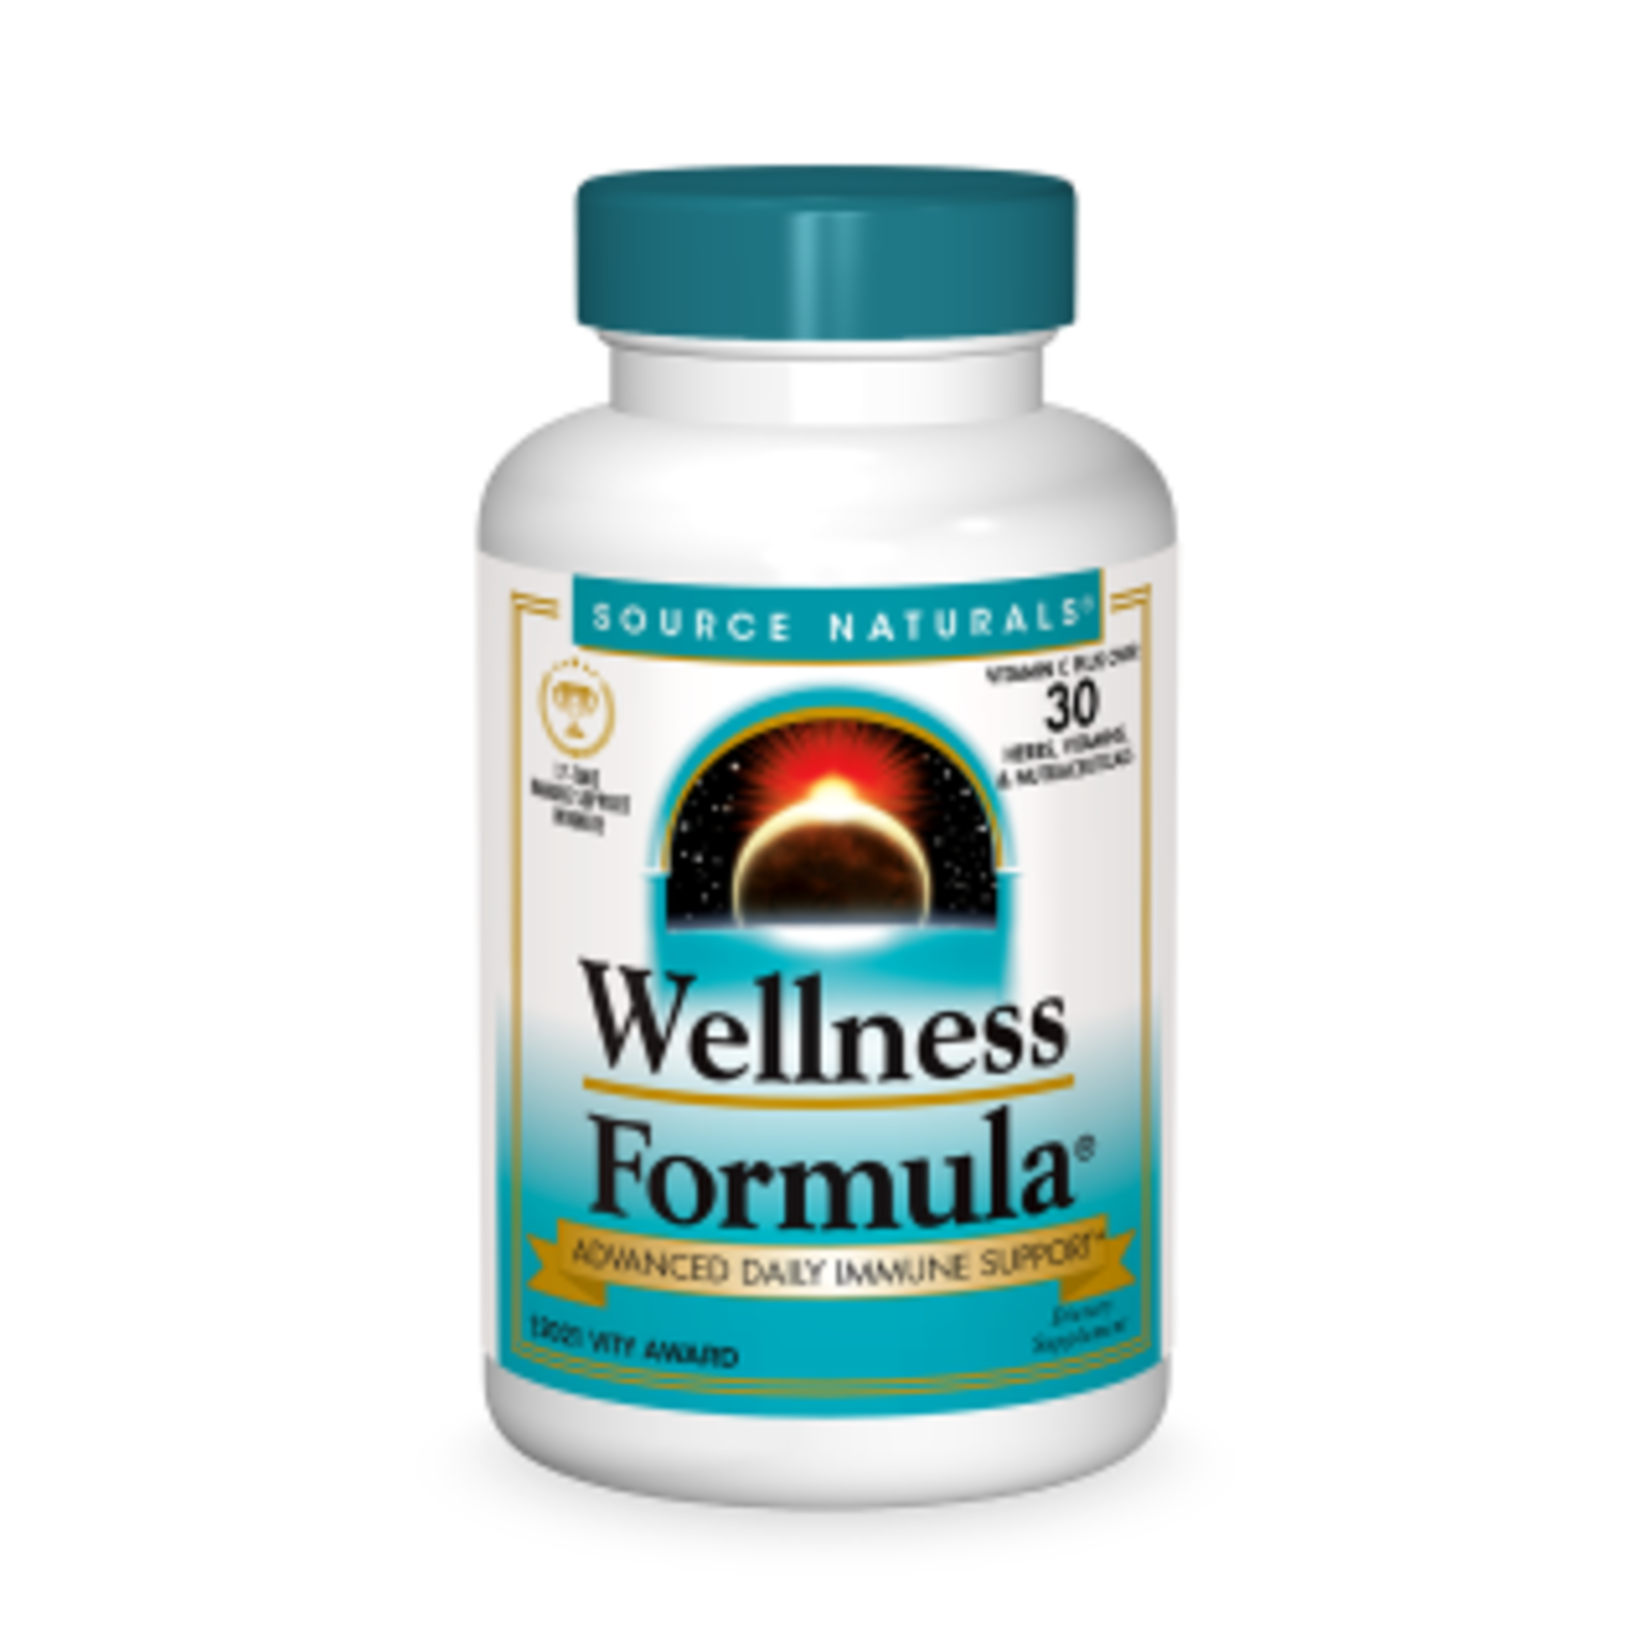 Source Naturals Source Naturals - Wellness Formula - 90 Tablets